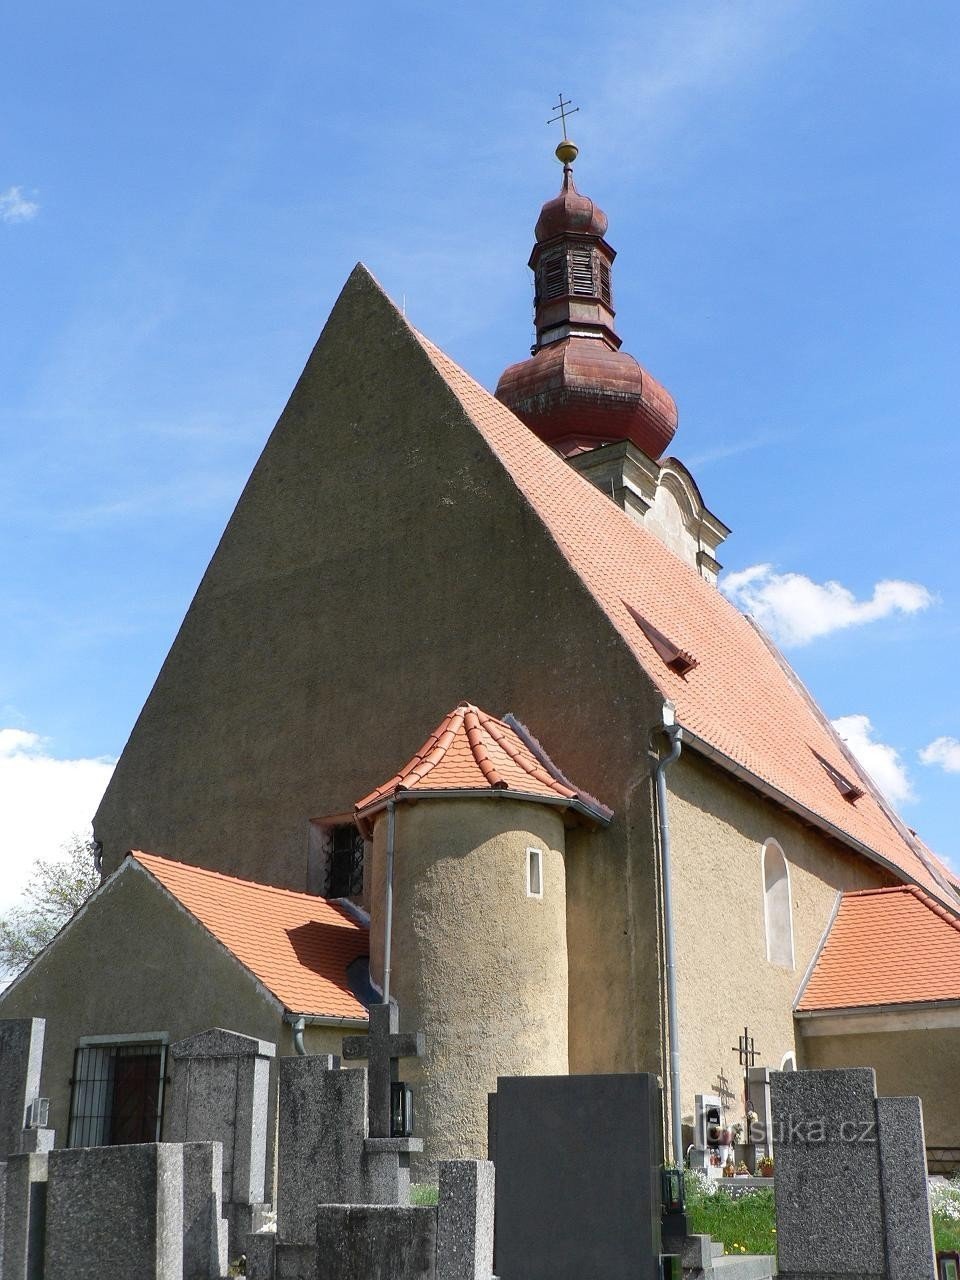 Týnec, église de l'Assomption de la Vierge Marie